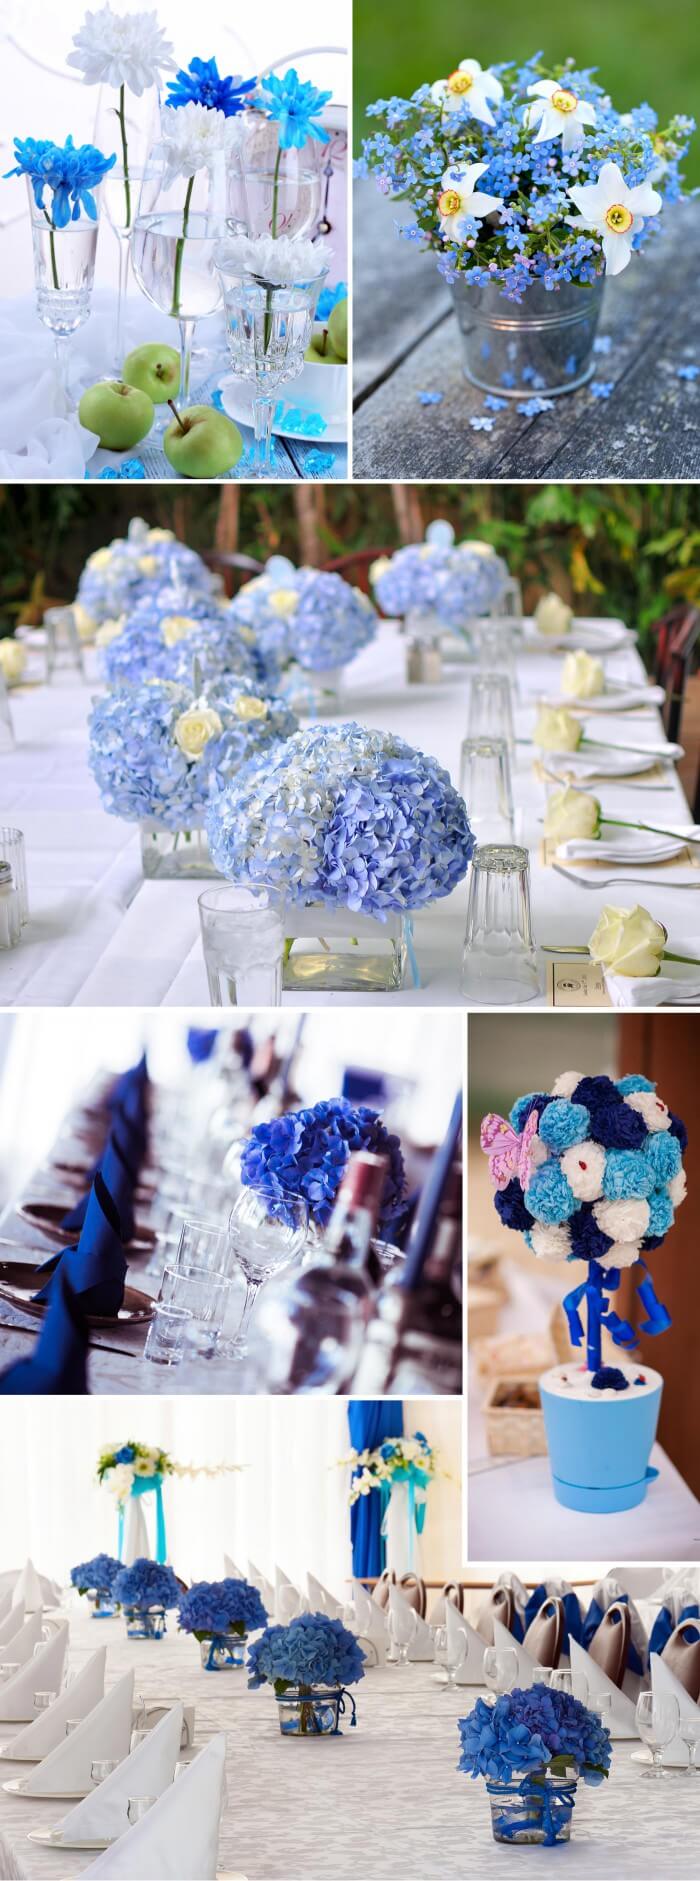 Tischdeko In Turkis Blau Viele Ideen Fur Die Hochzeitsdeko